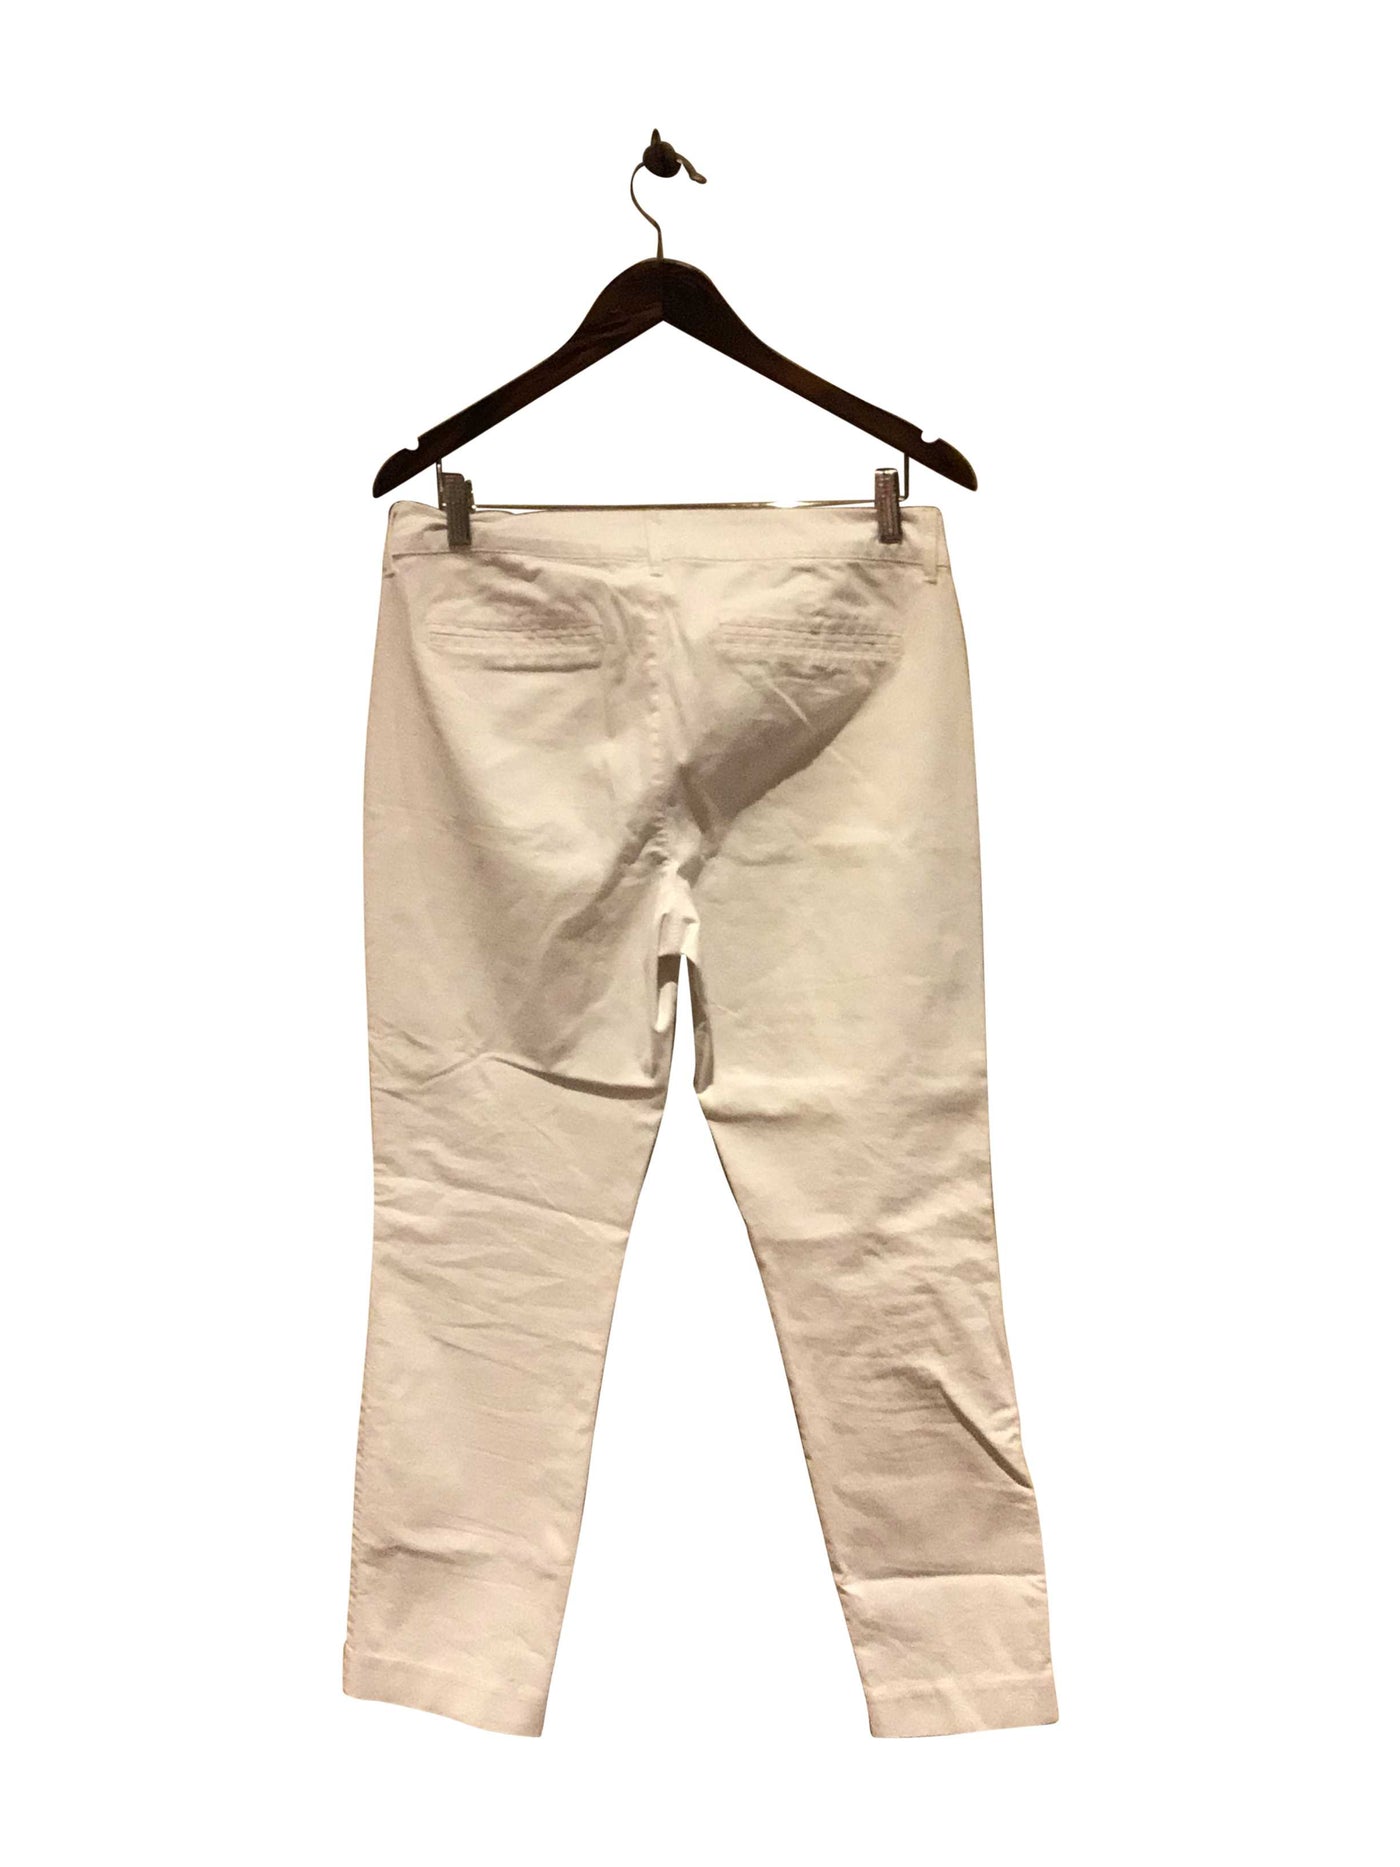 OLD NAVY Regular fit Pant in White  -  8  11.29 Koop